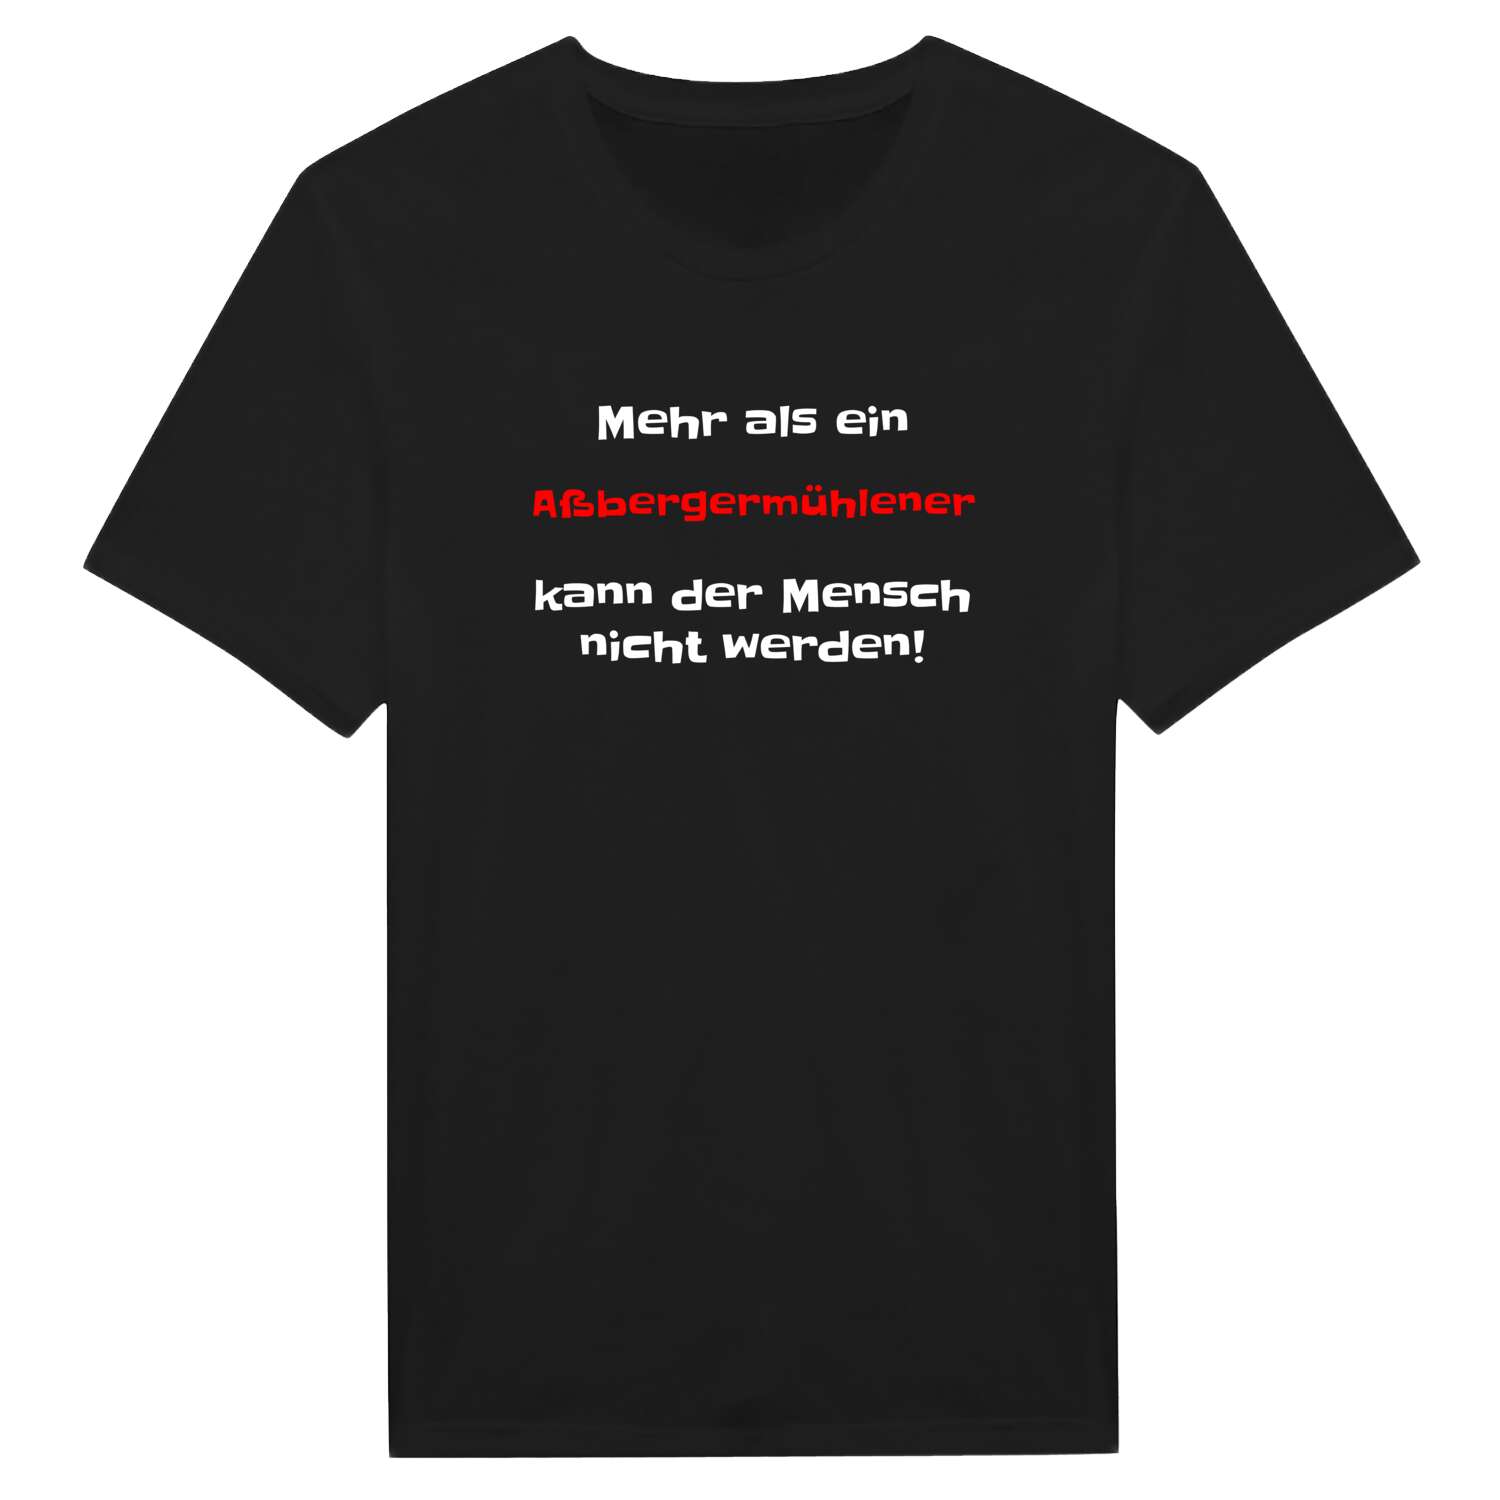 Aßbergermühle T-Shirt »Mehr als ein«